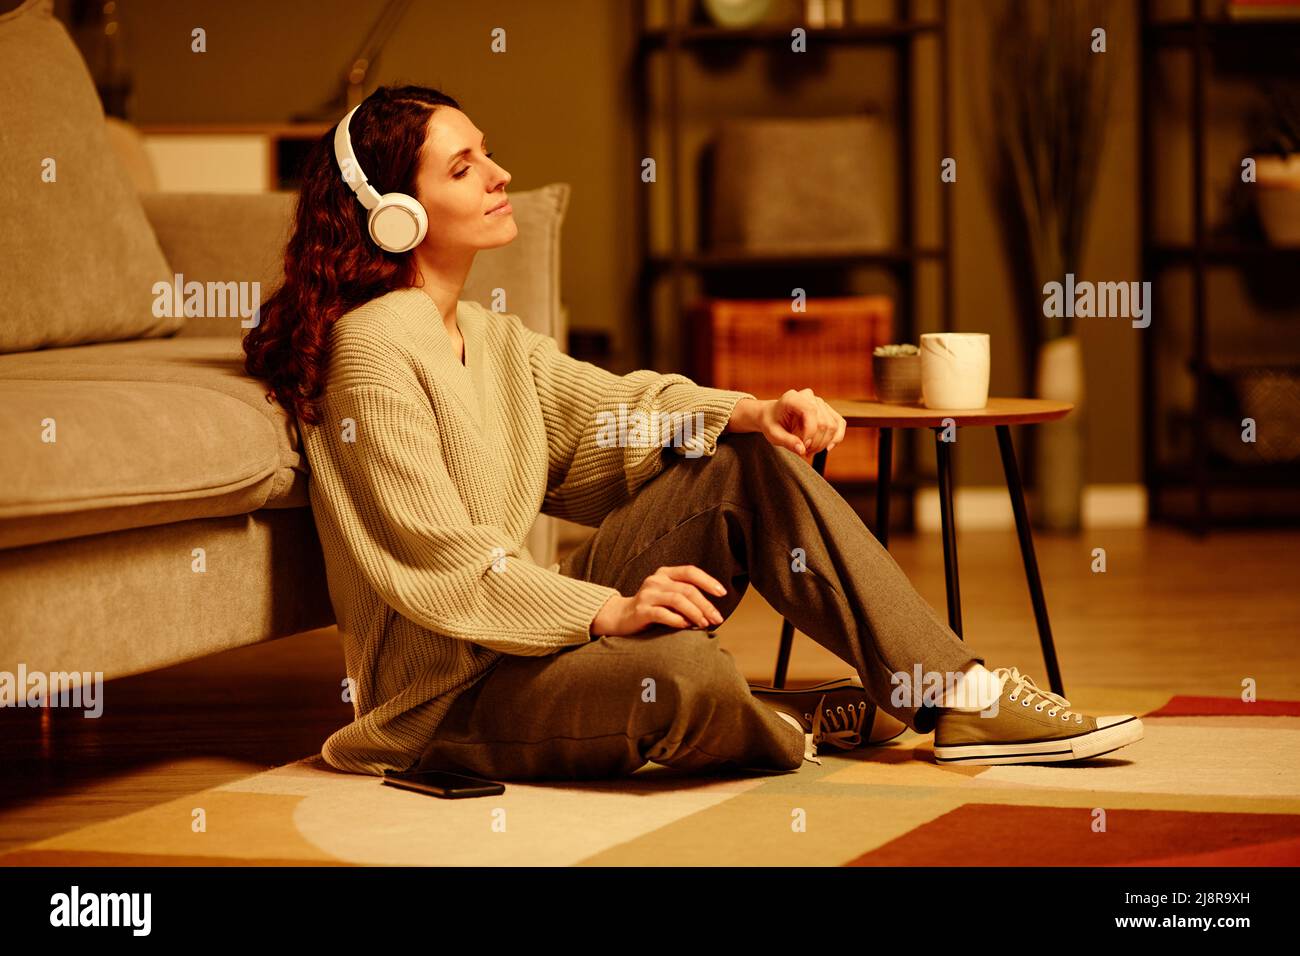 Elegante kaukasische Frau in legerer Kleidung, die abends entspannt auf dem Boden im Wohnzimmer sitzt und Musik über kabellose Kopfhörer hört Stockfoto